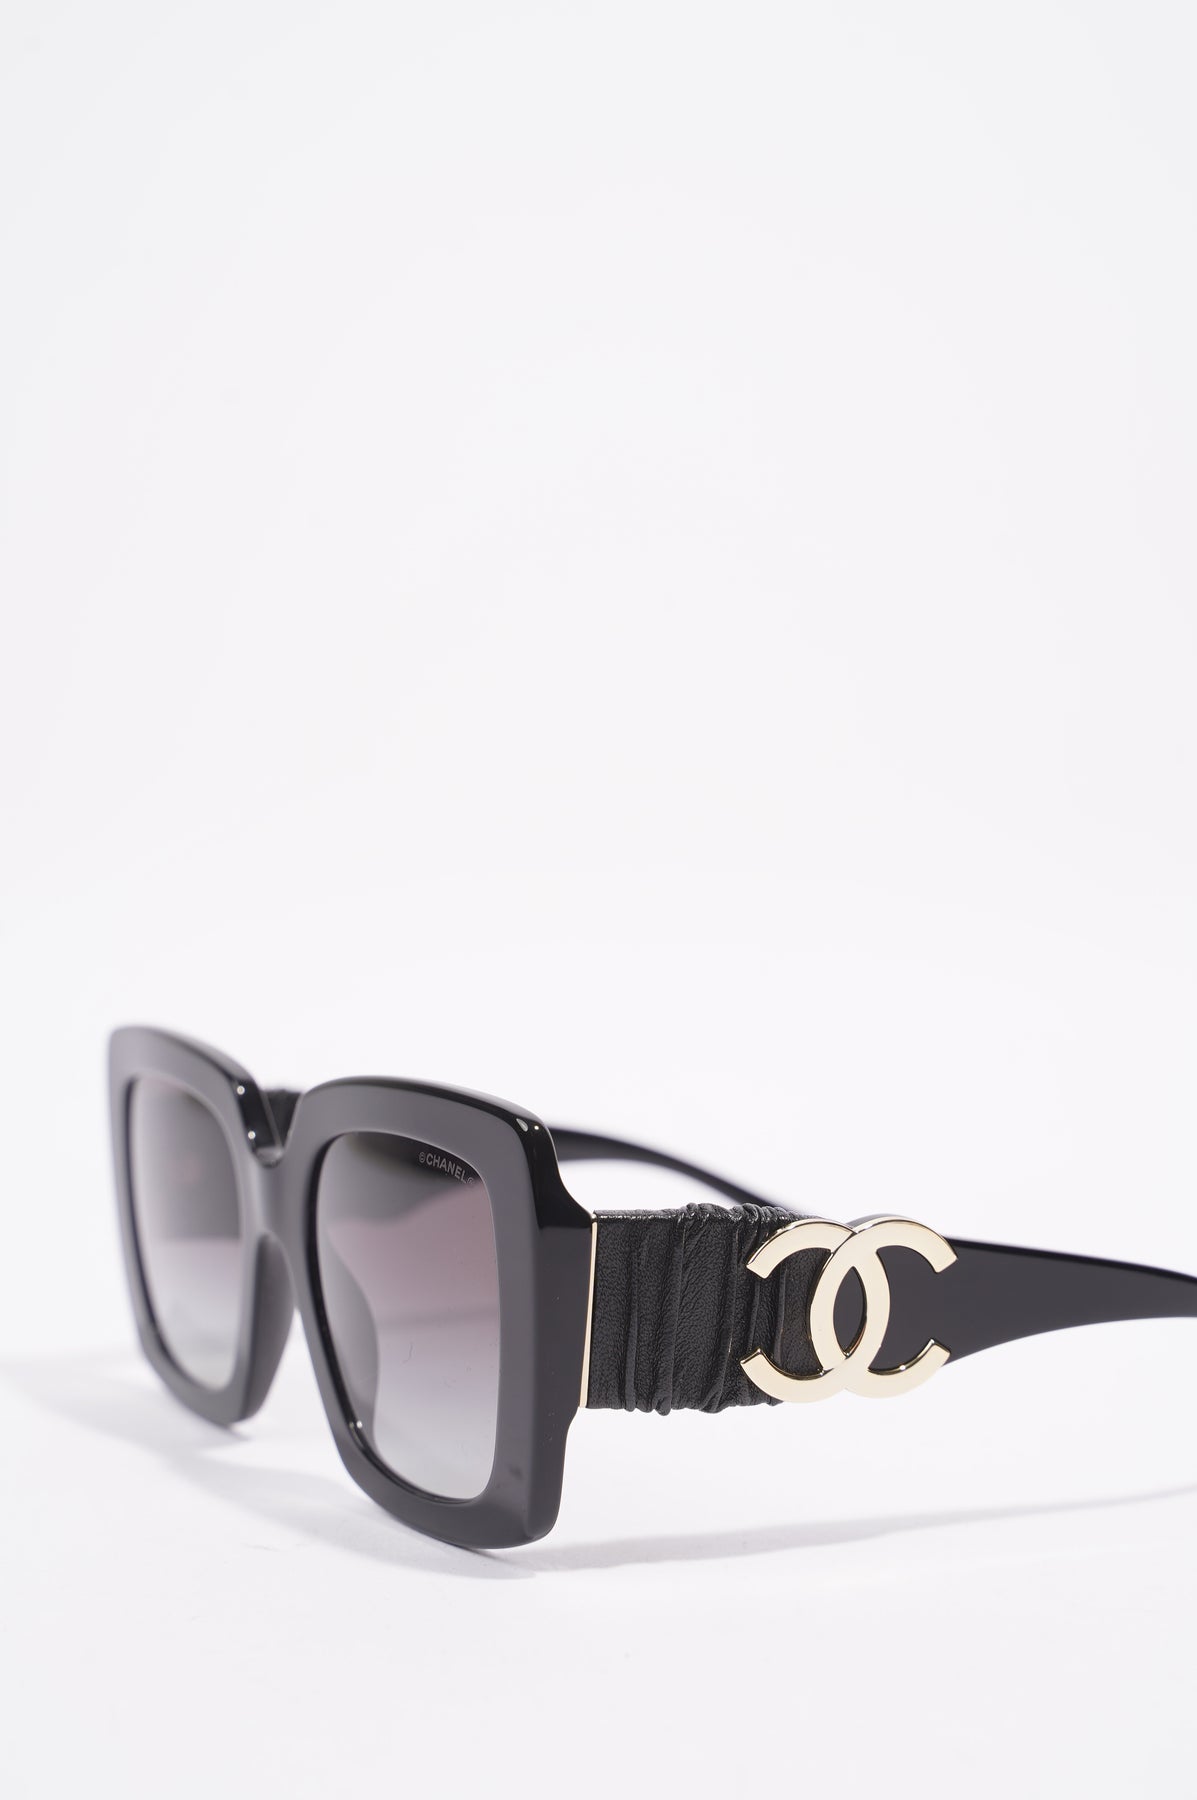 CHANEL, Accessories, Chanel Square Sunglasses